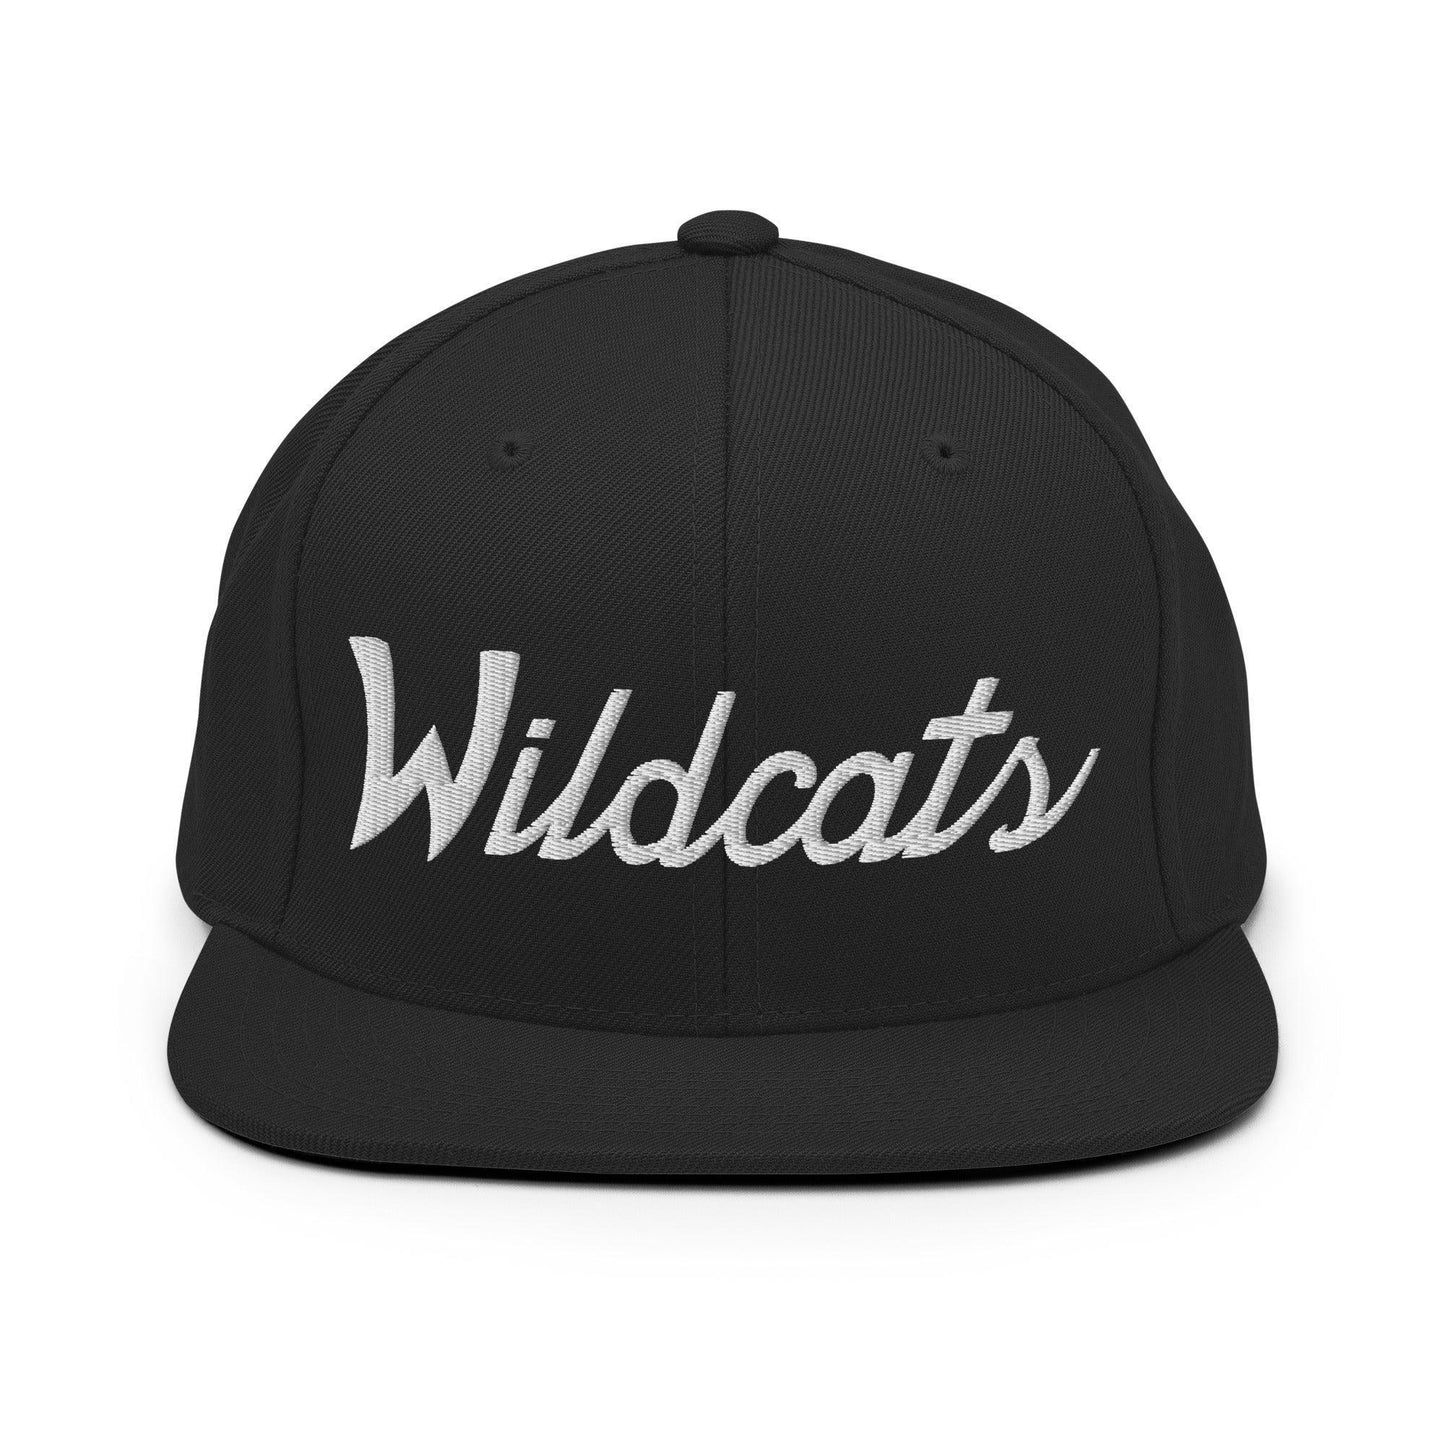 Wildcats School Mascot Script Snapback Hat Black